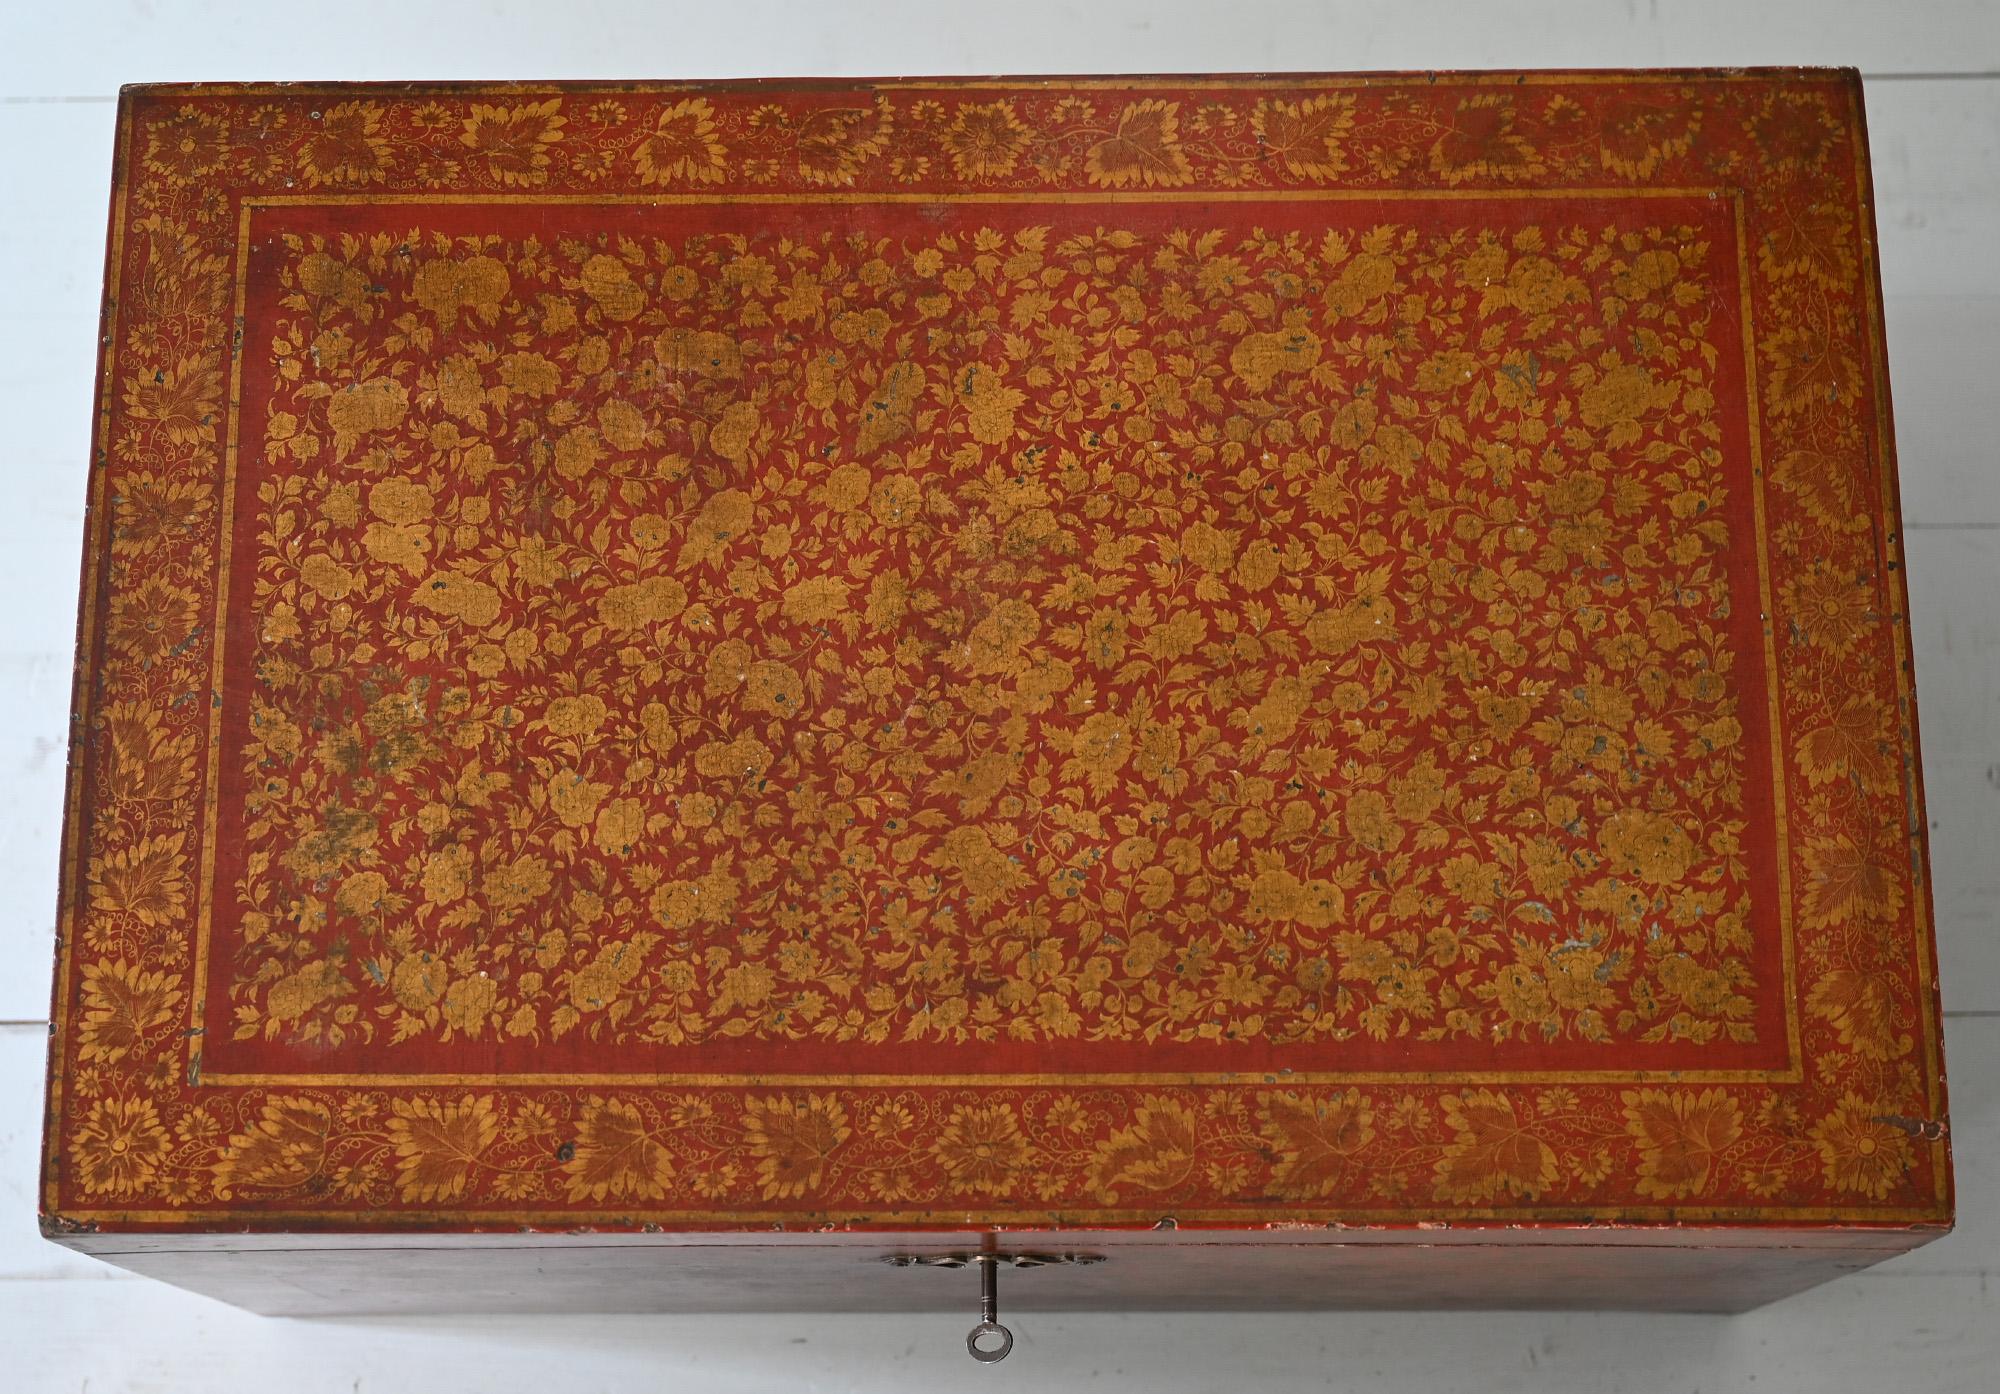 Coffre laqué rouge sur pied 19e siècle, Inde britannique, 1860 

Très charmant coffre du 19ème siècle avec de magnifiques décorations florales laquées et dorées. Il est très rare de trouver une boîte de ce type en rouge, car elles sont